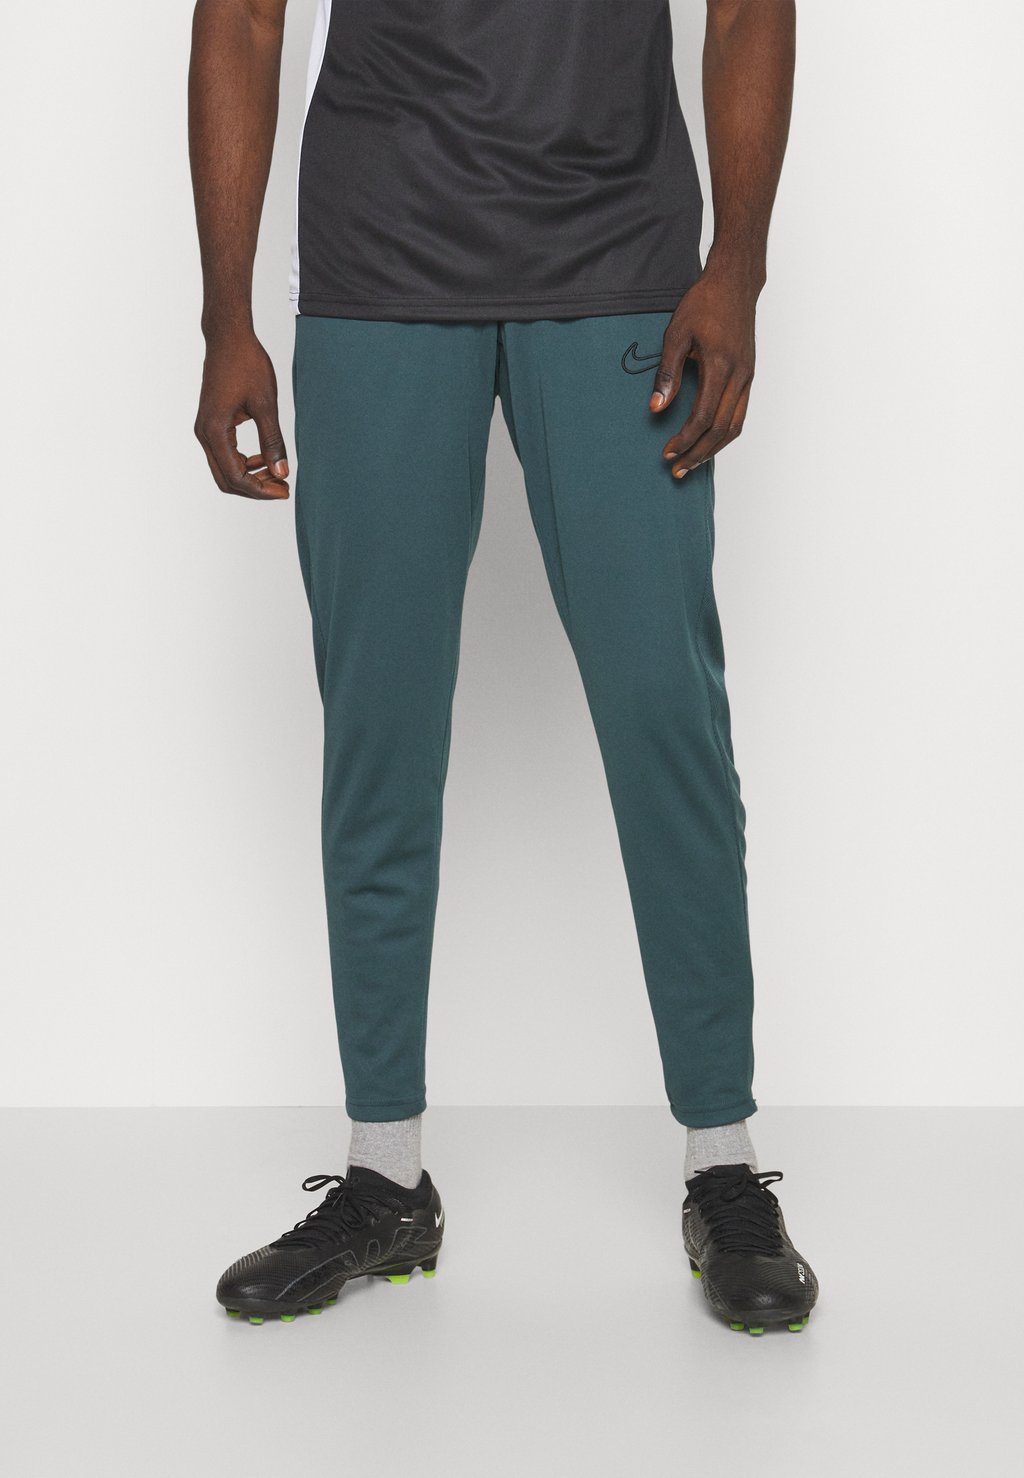 Спортивные брюки Academy 23 Pant Nike, цвет deep jungle/black спортивные брюки pant taper nike deep jungle